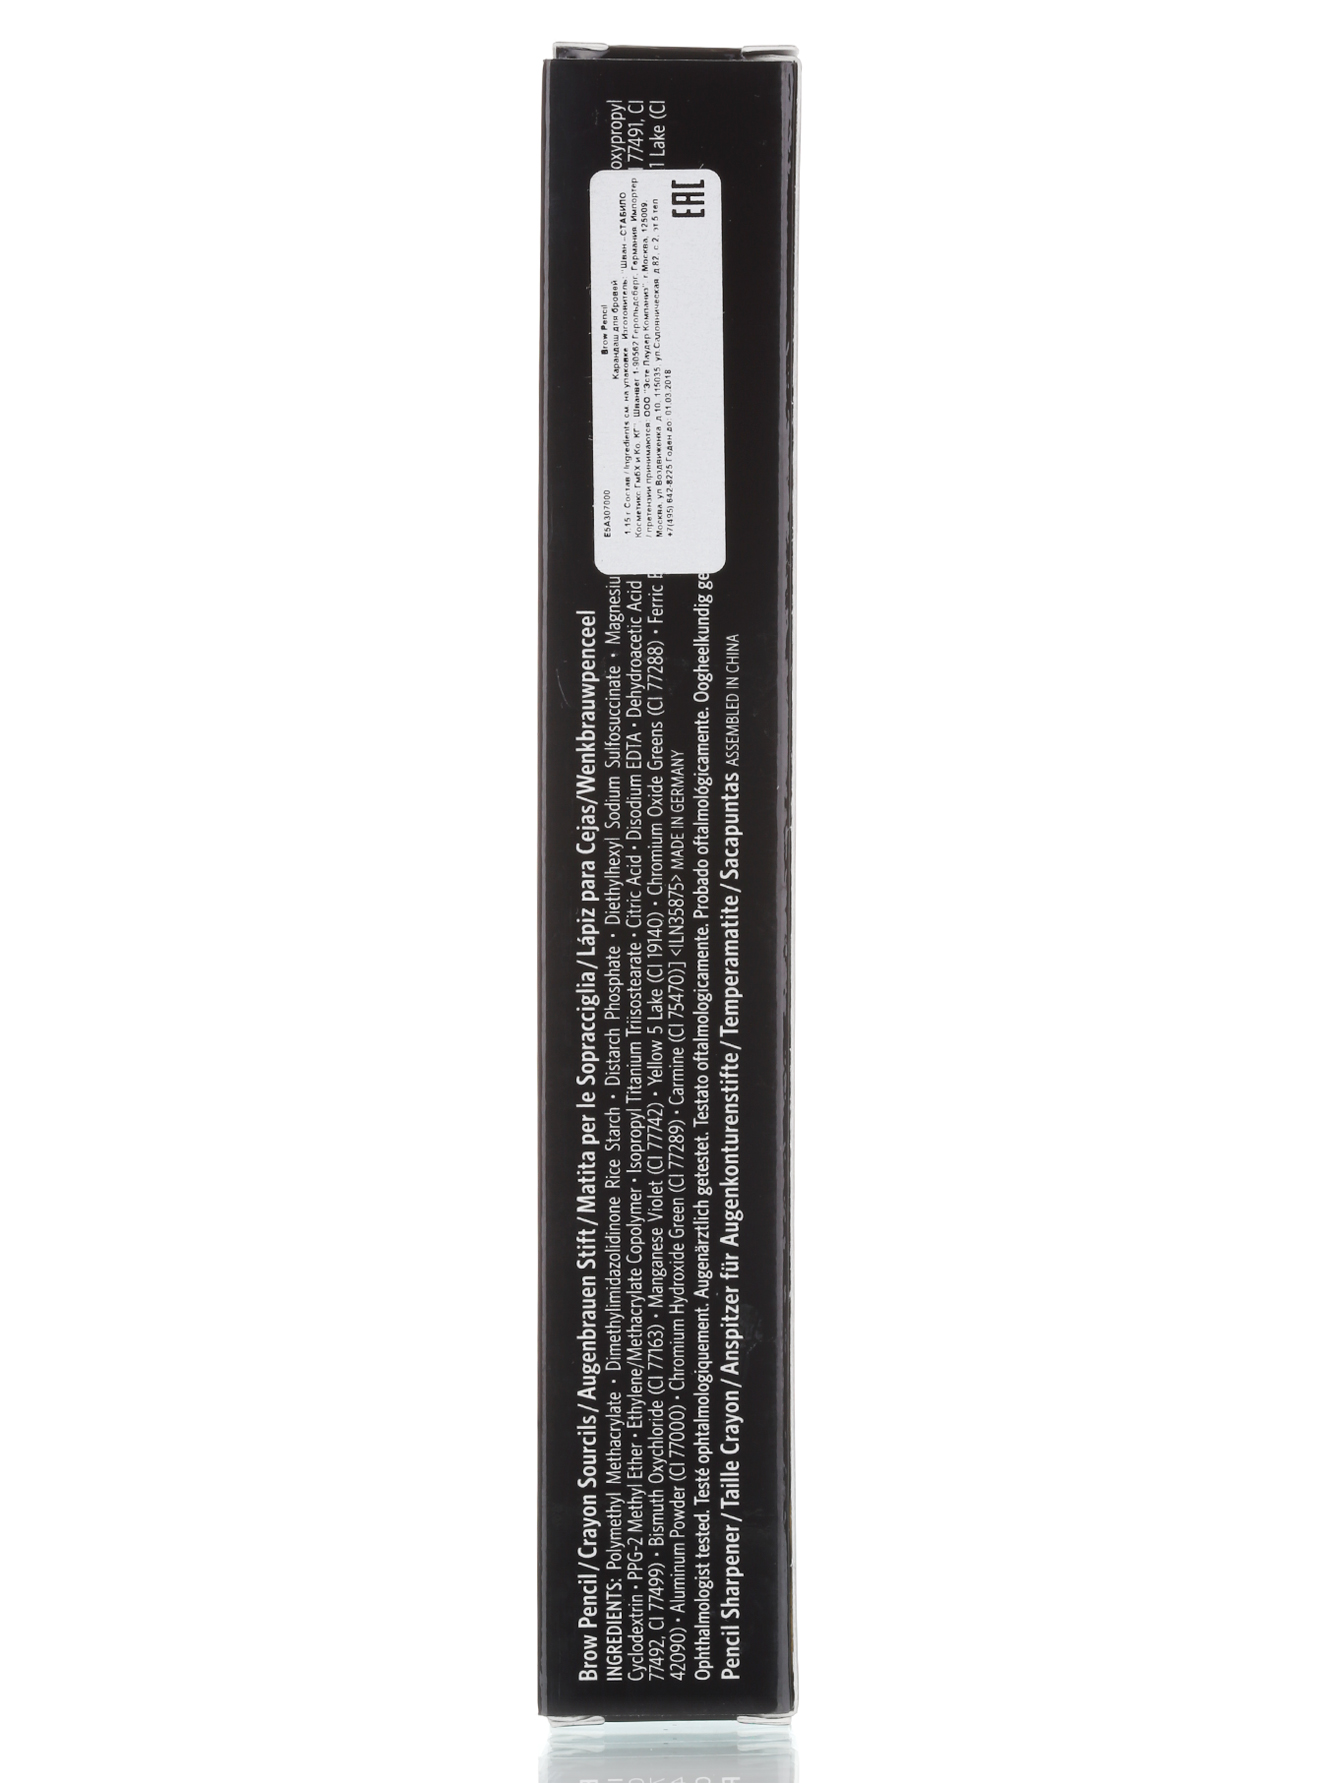  Карандаш для бровей - Brunette, Brow Pencil - Модель Верх-Низ